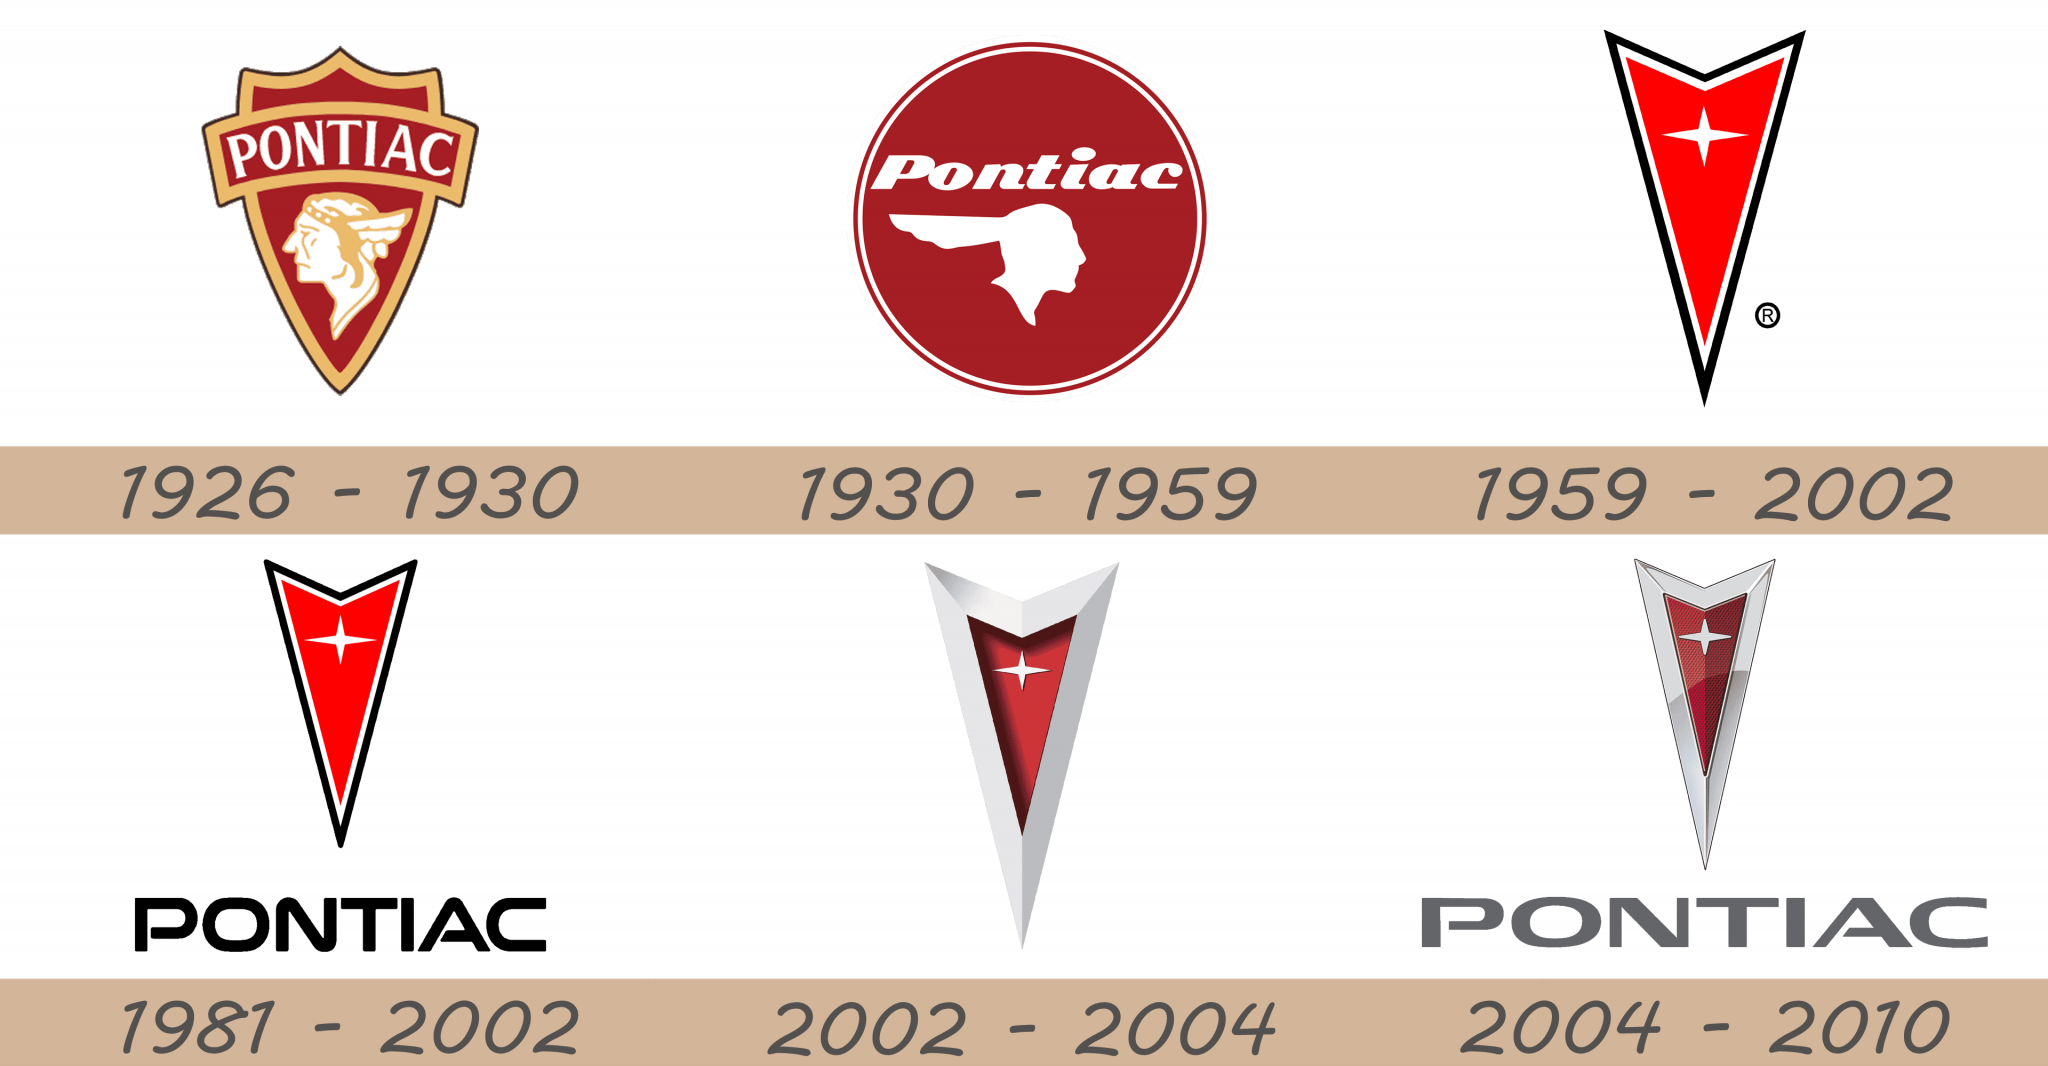 Pontiac car brands